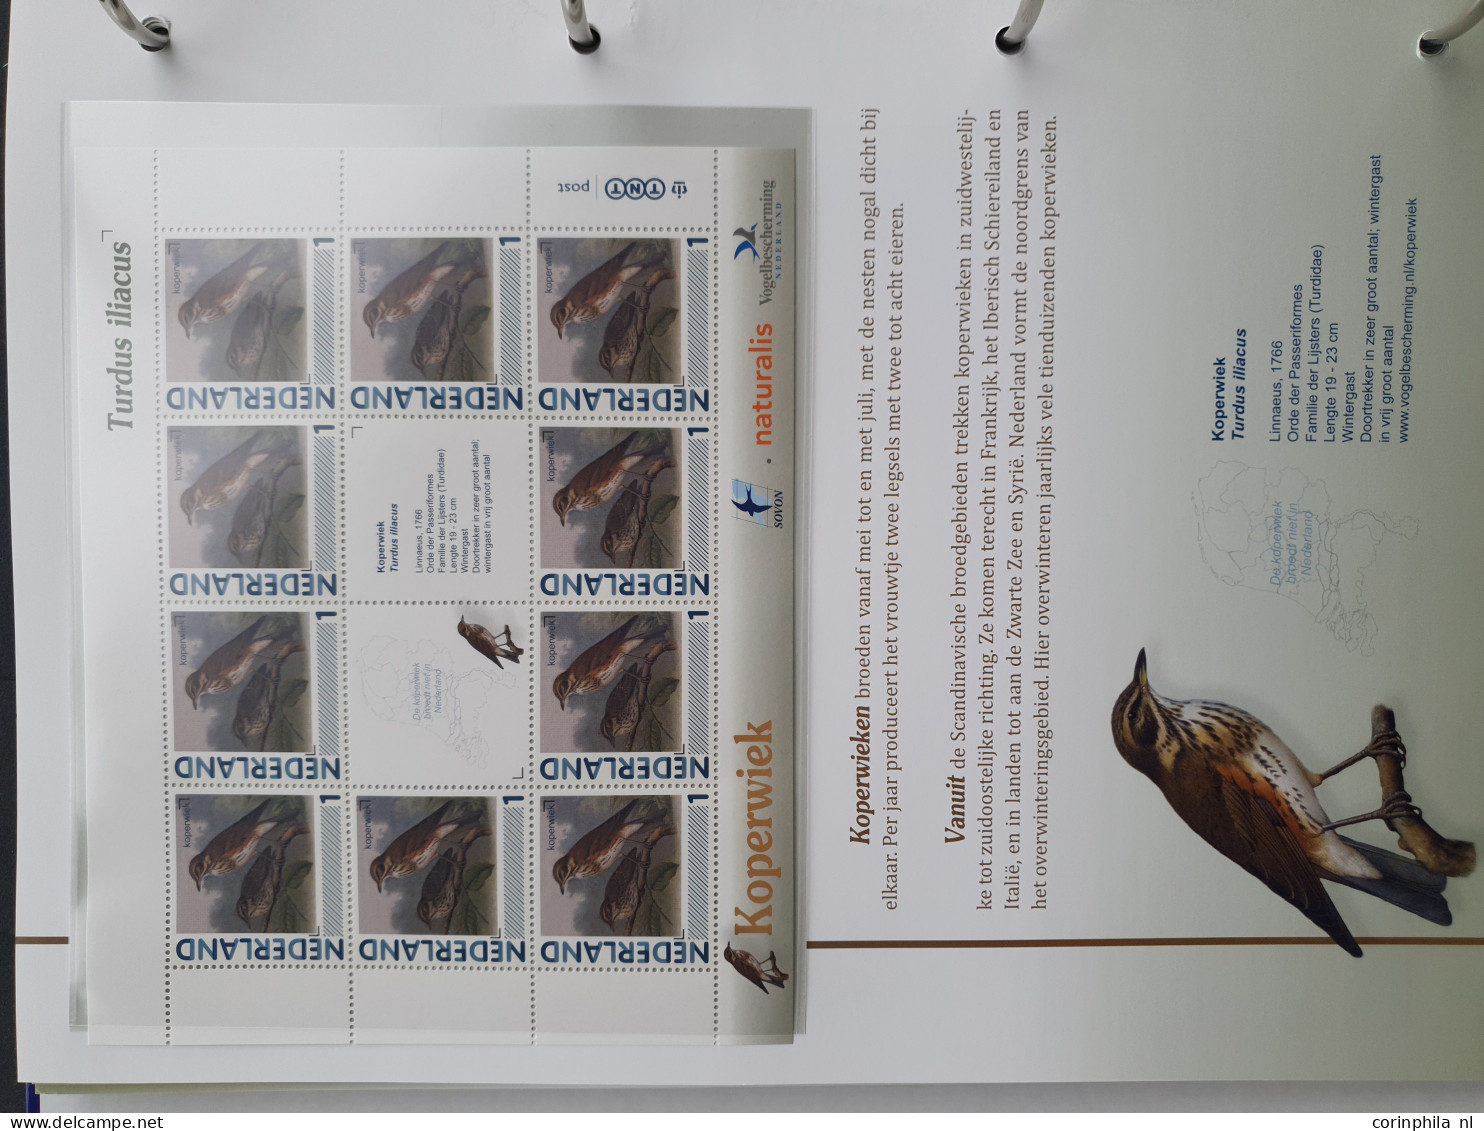 2007-2020 collecties nominaal (Canon van Nederland, Nostalgie in Postzegels, Vlinders, Vogels (inclusief Aigo Pen)) w.b.